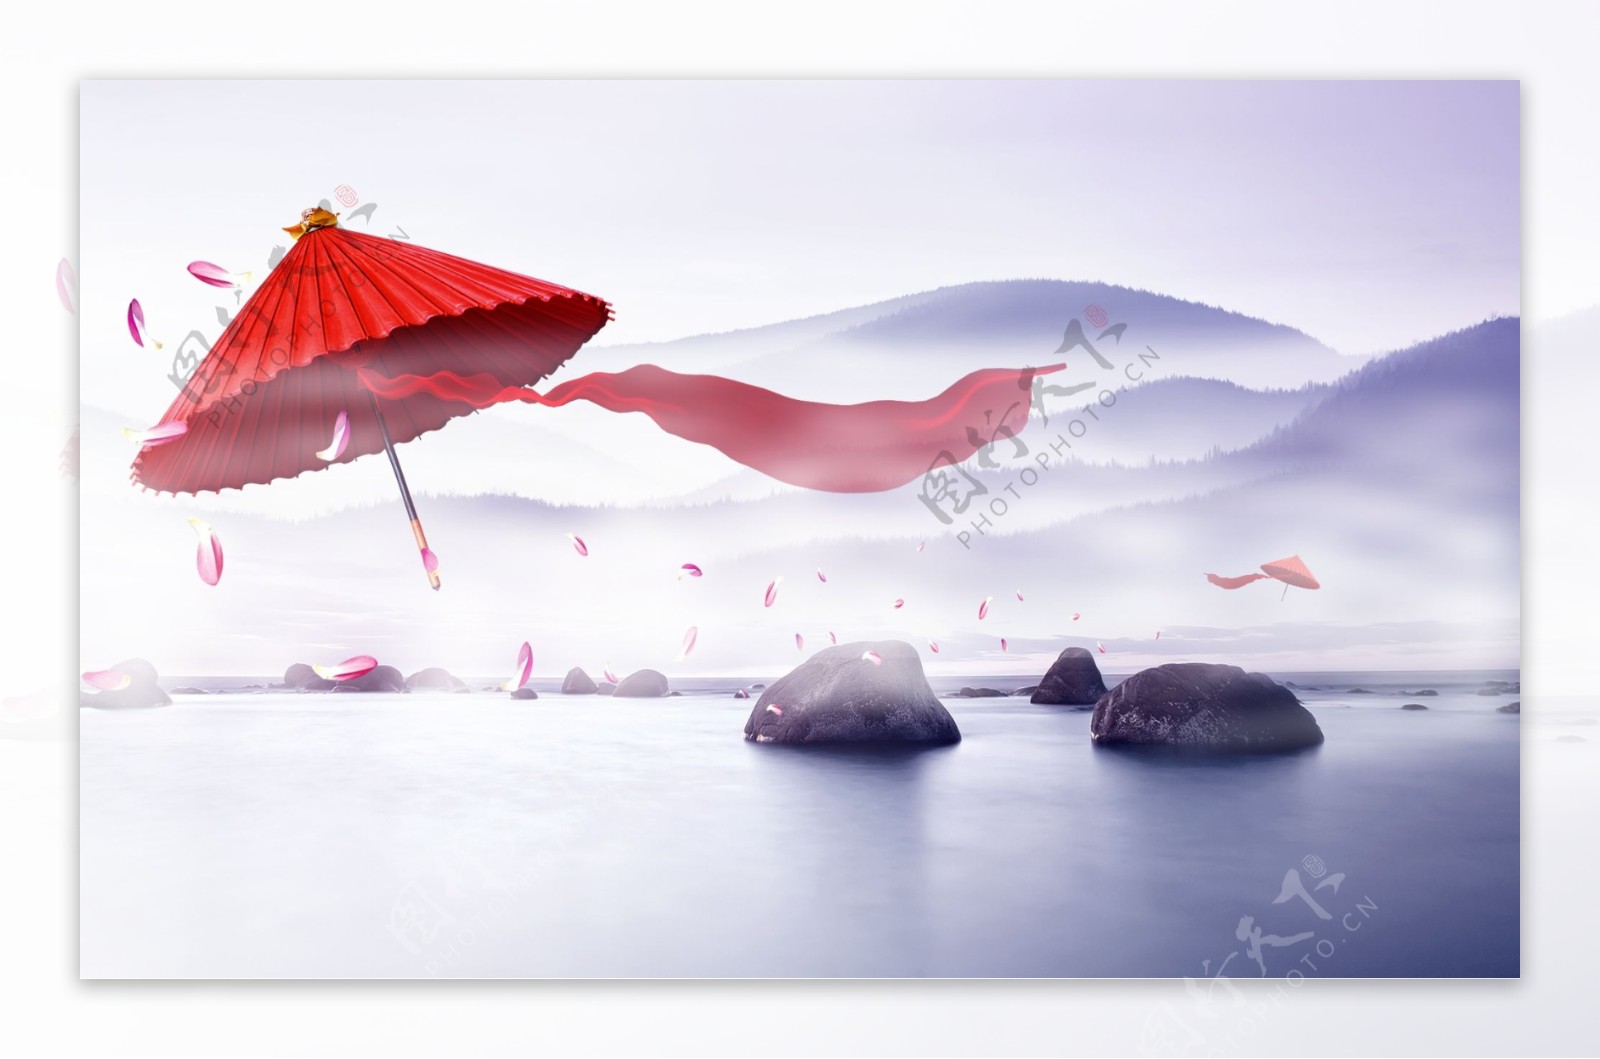 中国风红纸伞